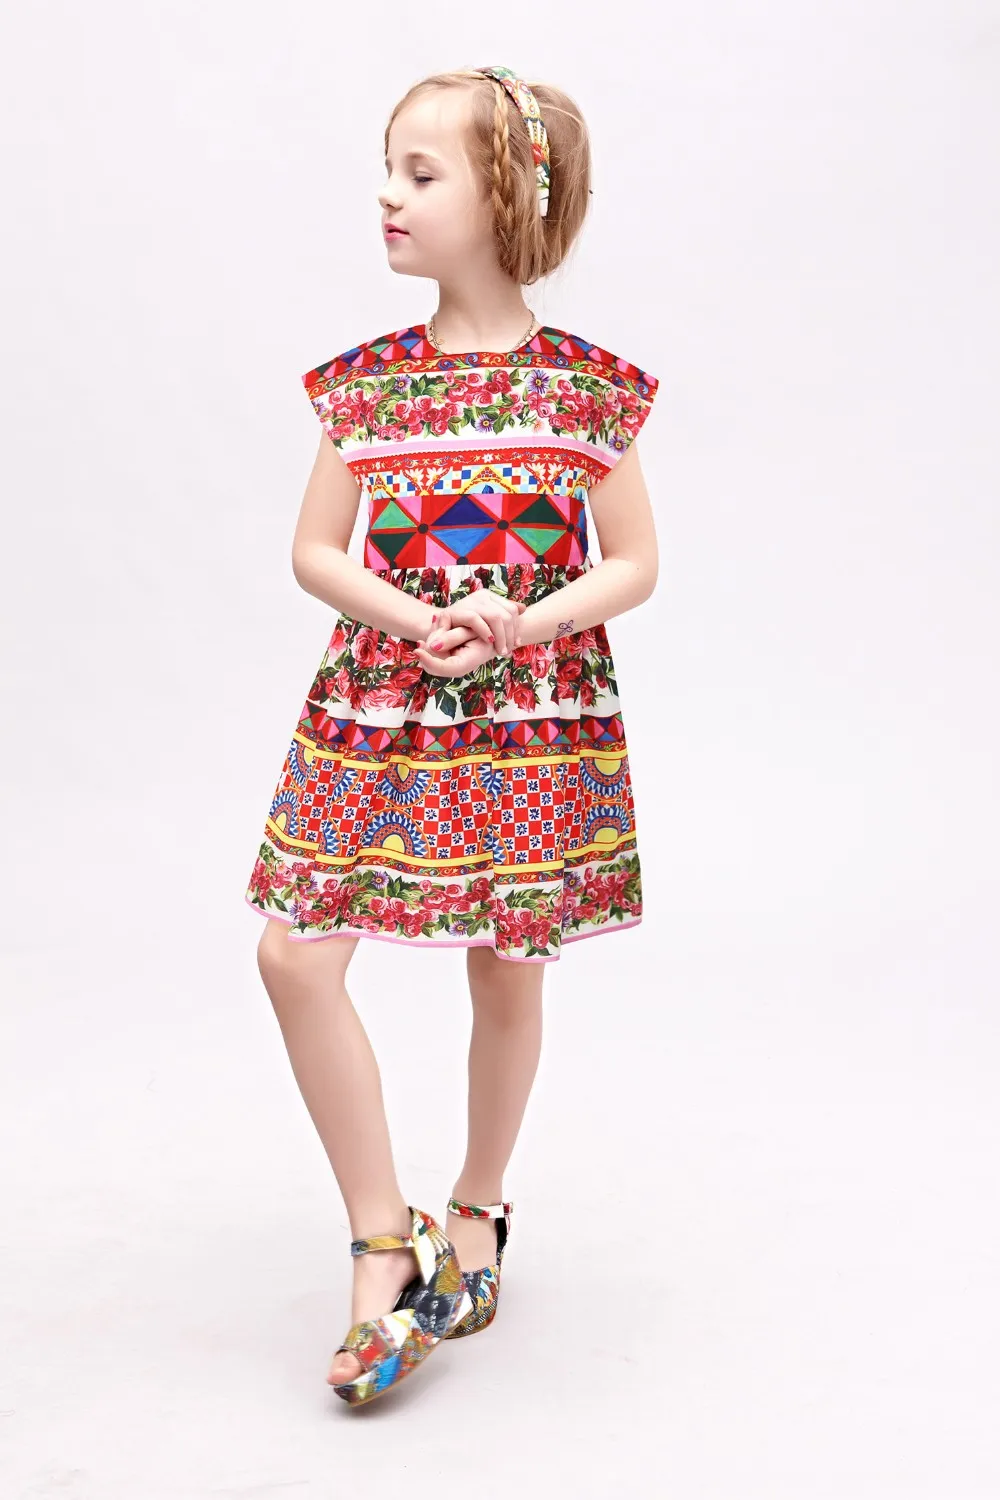 W. L. MONSOON/платье принцессы с поясом для девочек; коллекция года; Брендовое детское летнее платье Vestidos с цветочным рисунком; Детские платья для девочек; одежда